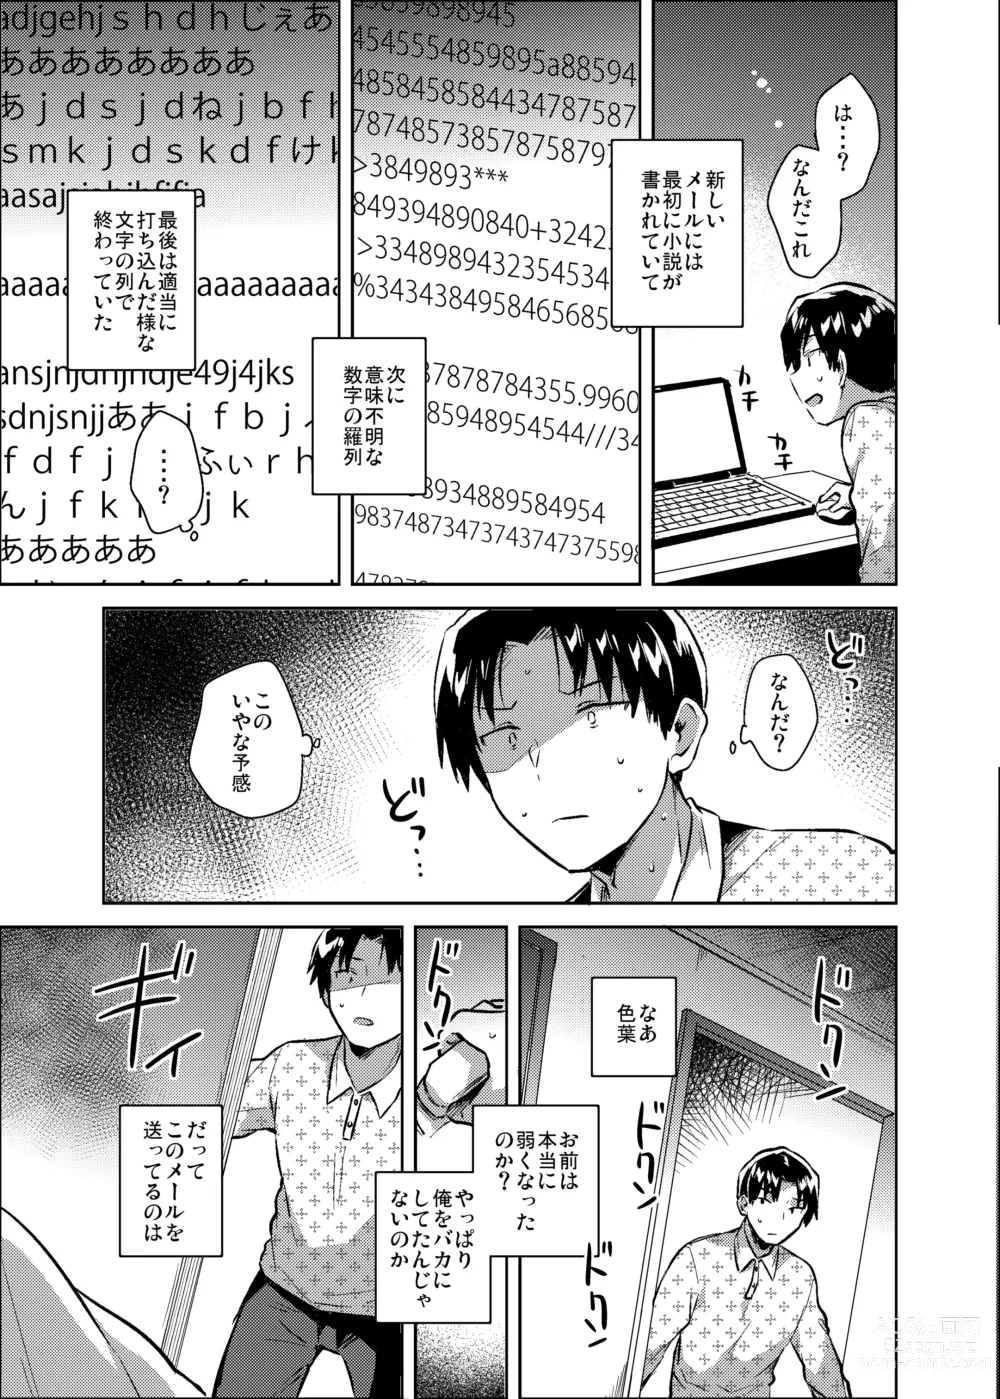 Page 22 of doujinshi Imouto wa Kanji ga Yomenai